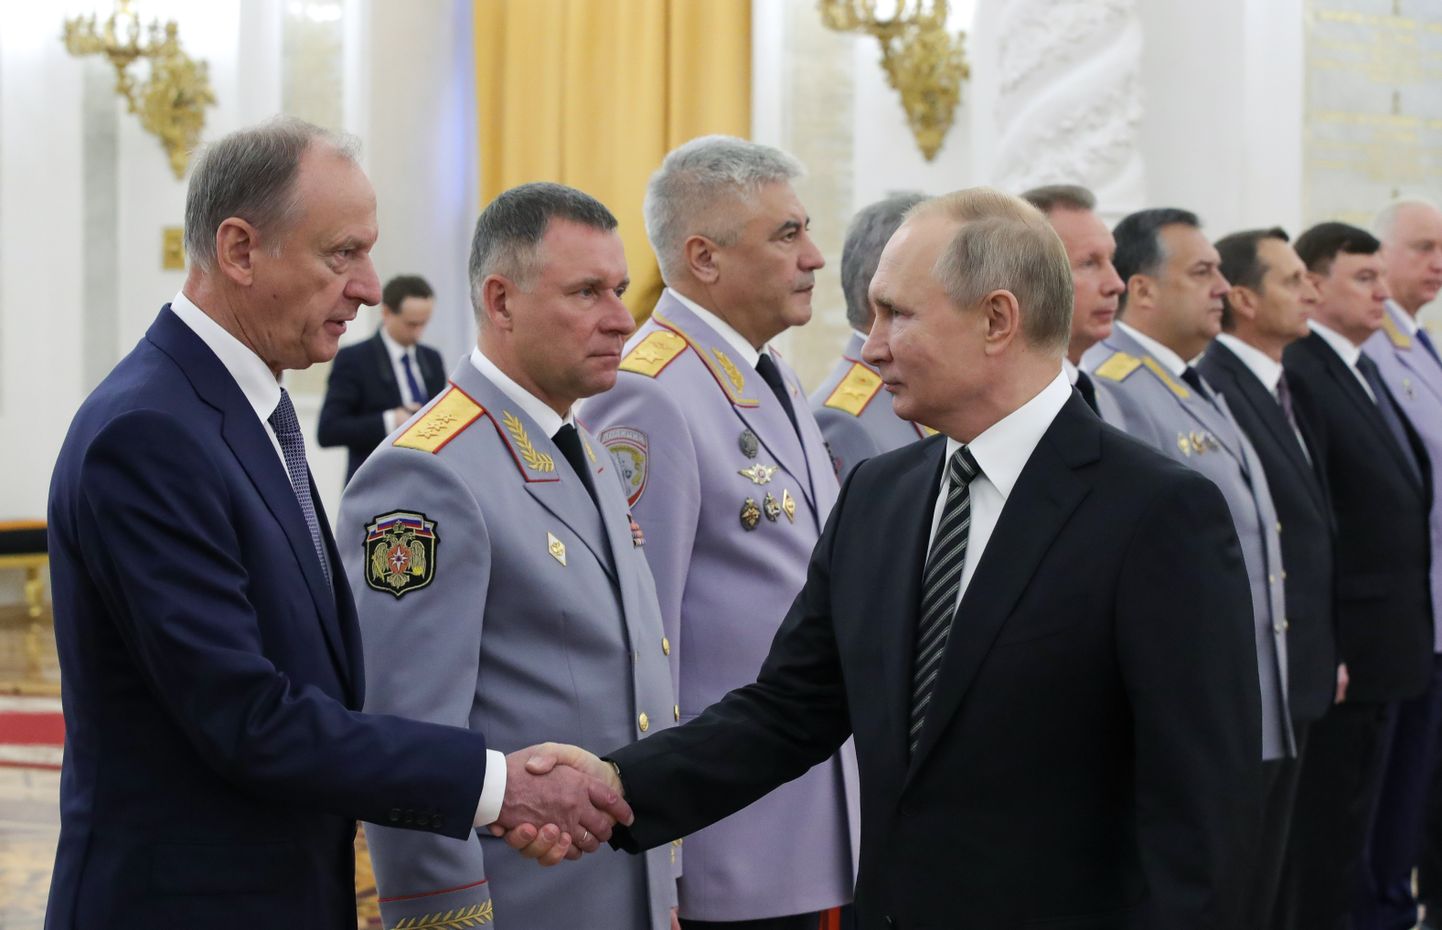 Vene president Vladimir Putin kolmapäeval Kremlis kohtumisel kõrgete sõjaväelaste ja riigiametnikega.